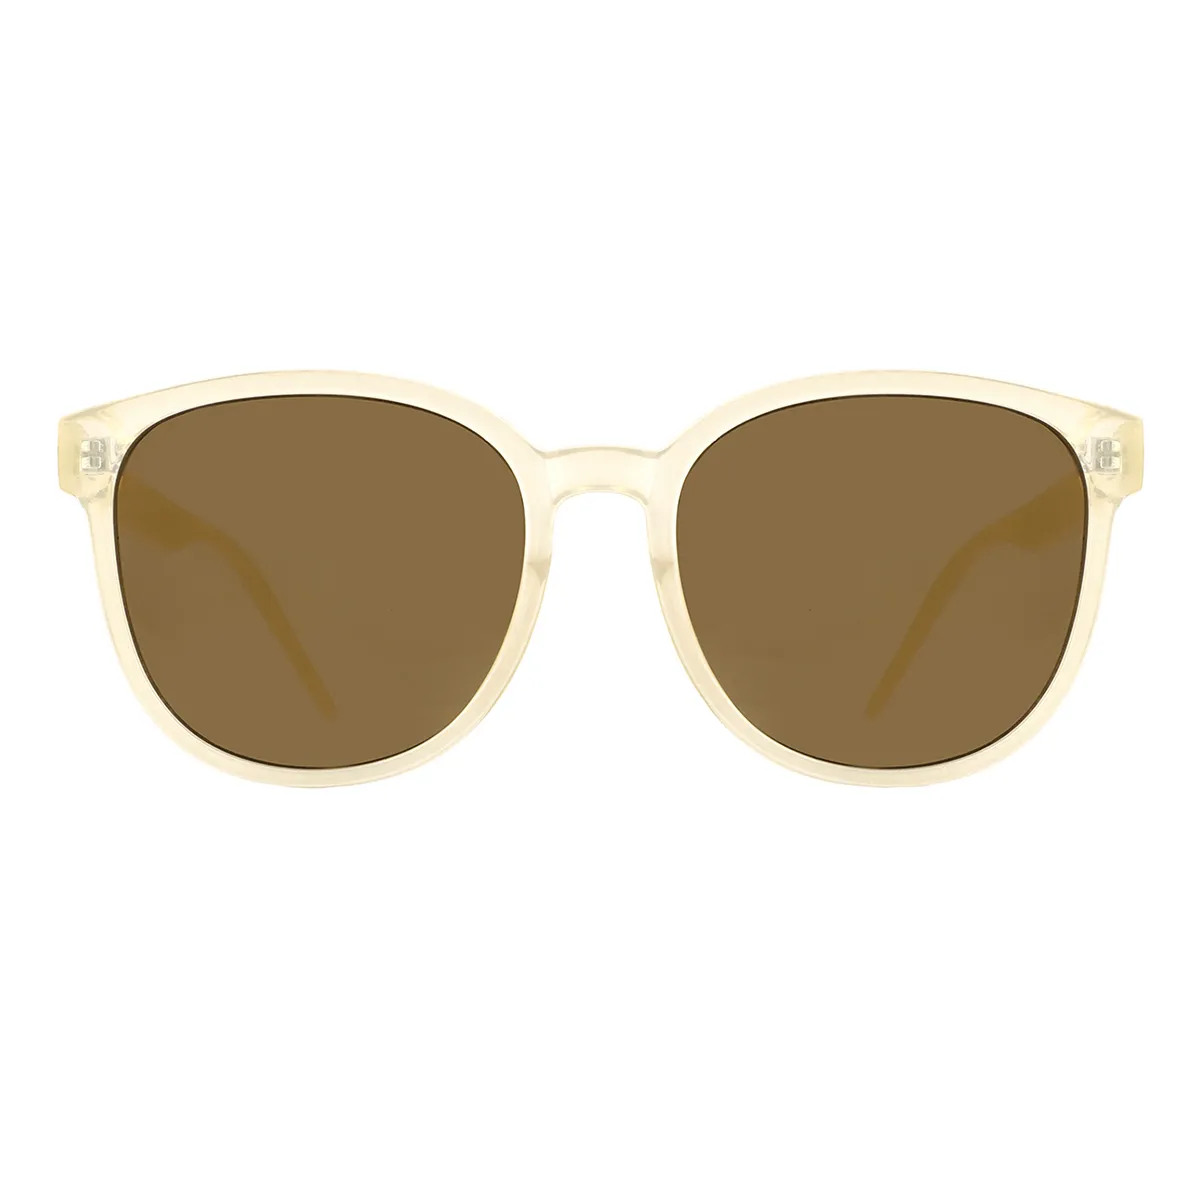 Classic Round Yellow-Tortoiseshell  Sunglasses for Women